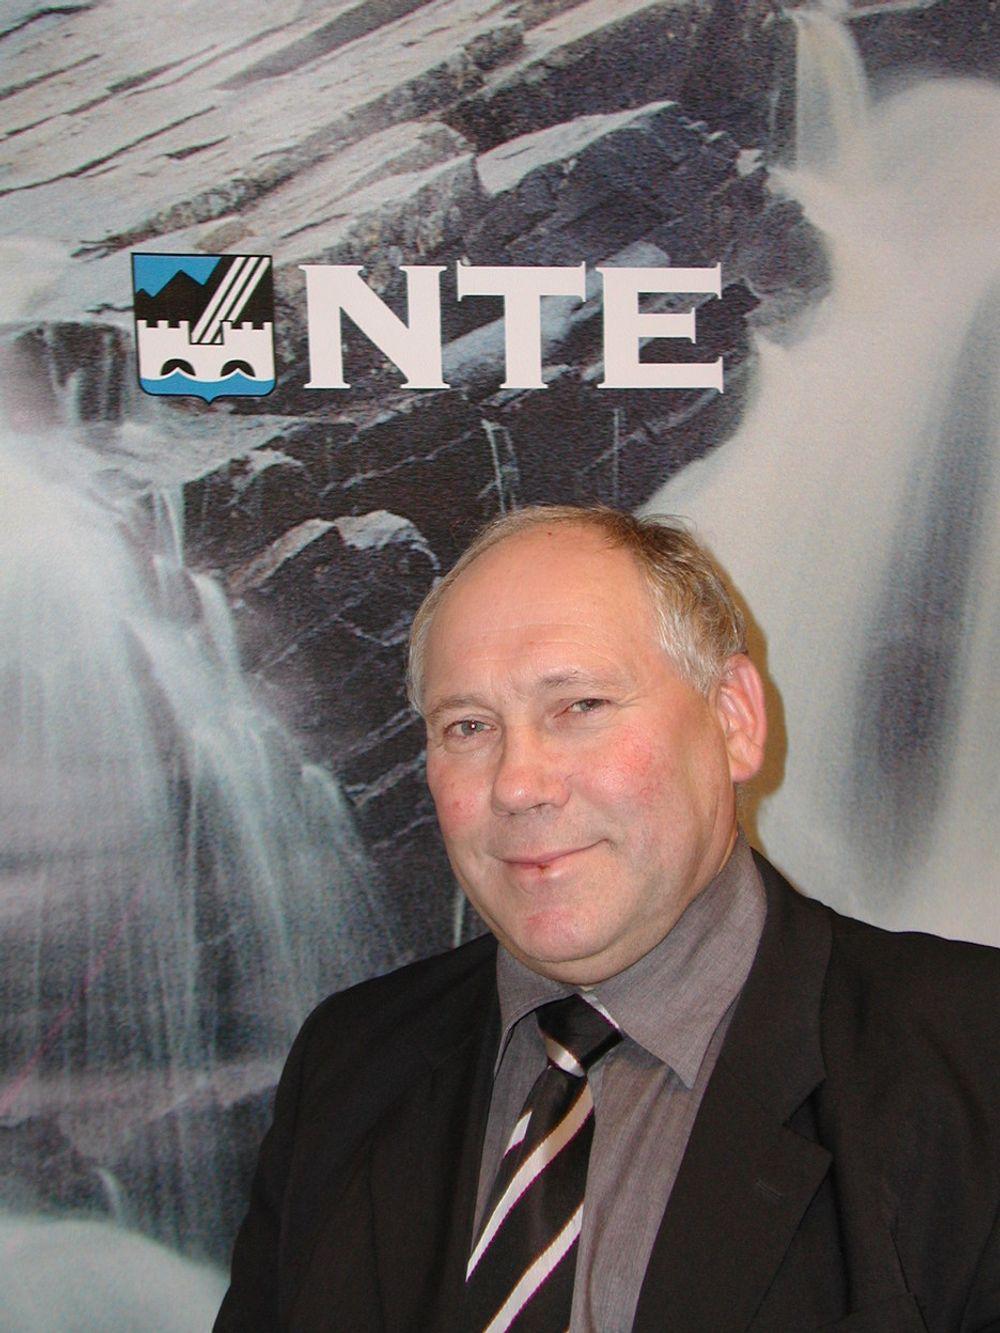 Administrerende direktør i NTE, Torbjørn Skjerve, mener NVEs krav vil føre til en voldsom struktuyrendring i bransjen.